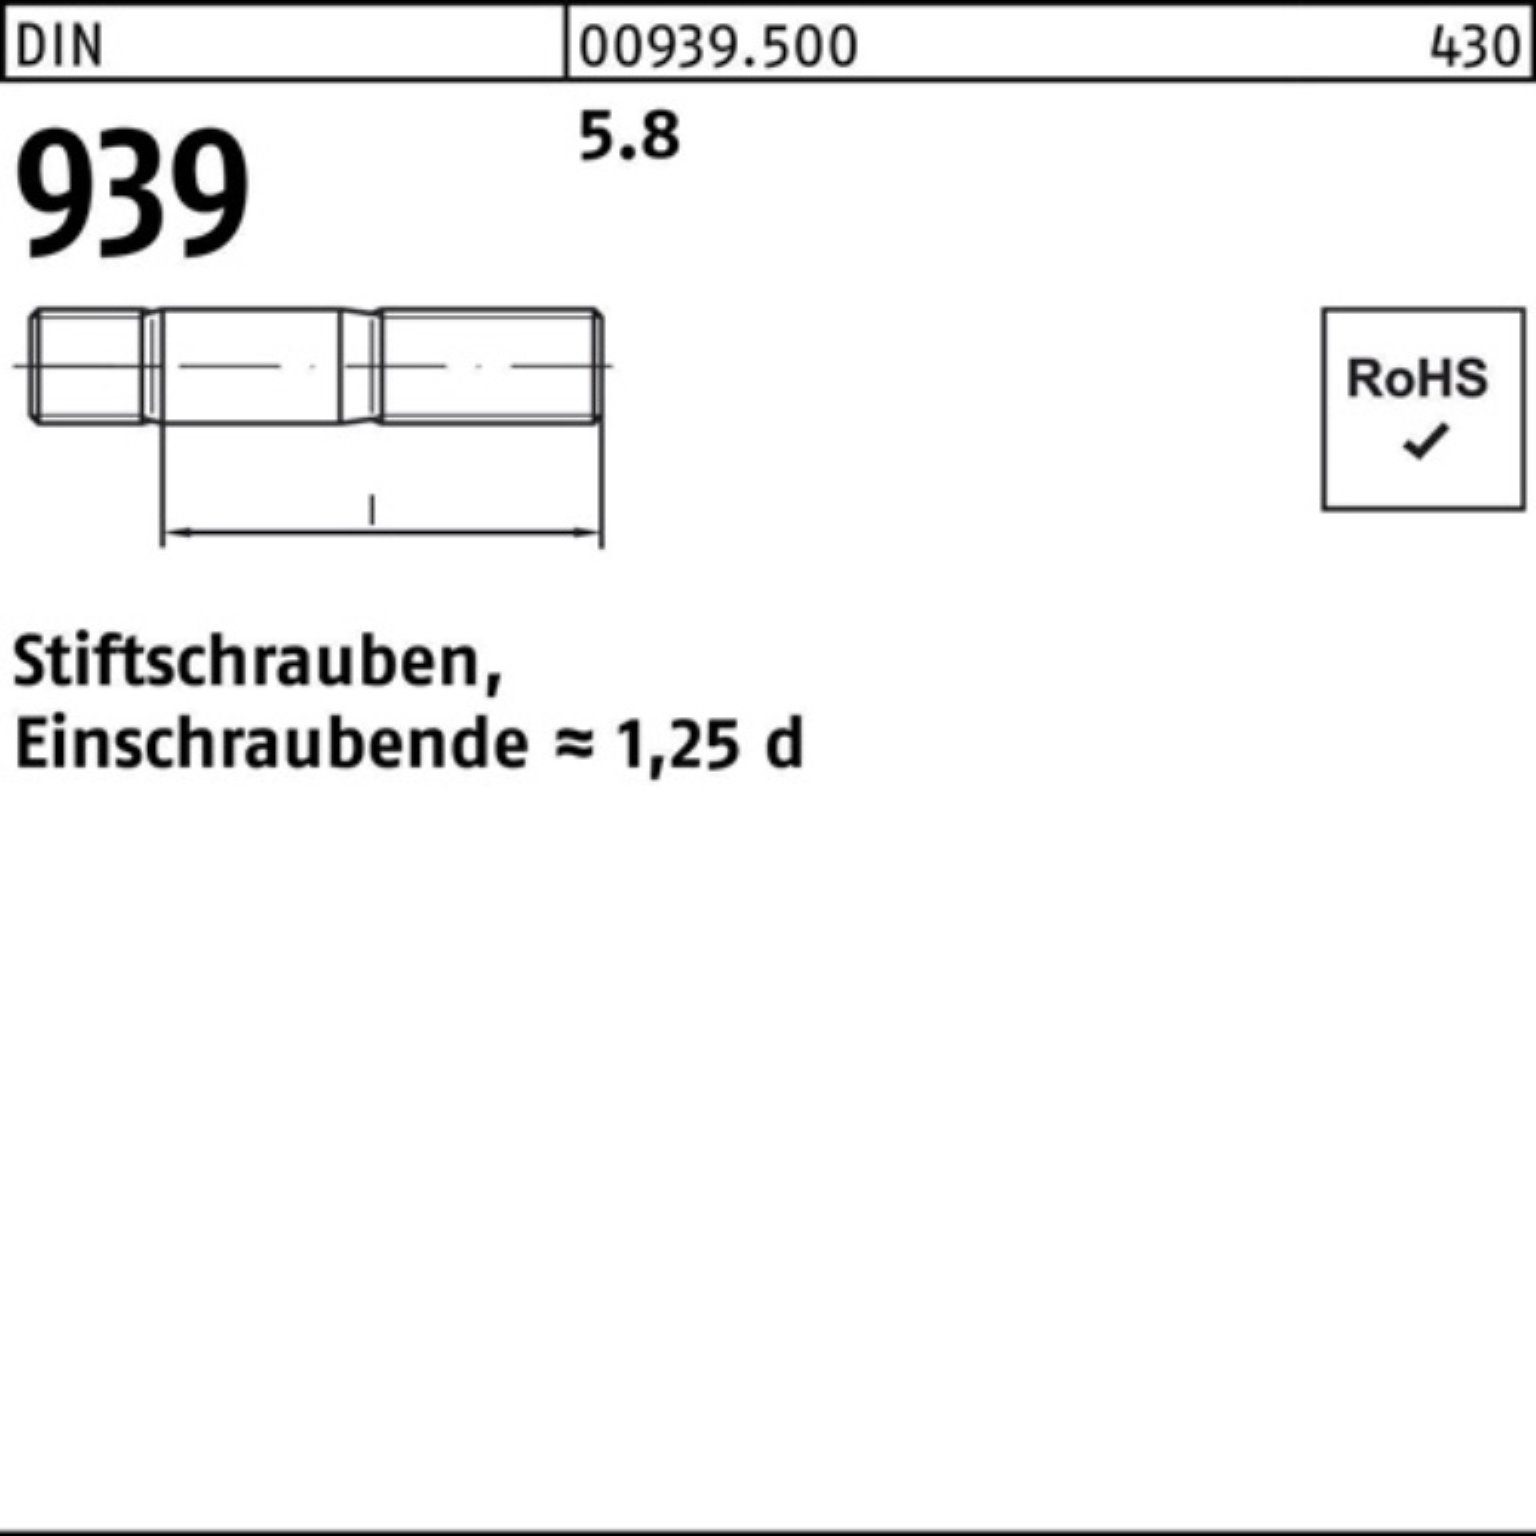 Reyher Stiftschraube Einschraubende=1,25d Stiftschraube 100er 939 M8x Pack S DIN 5.8 25 100